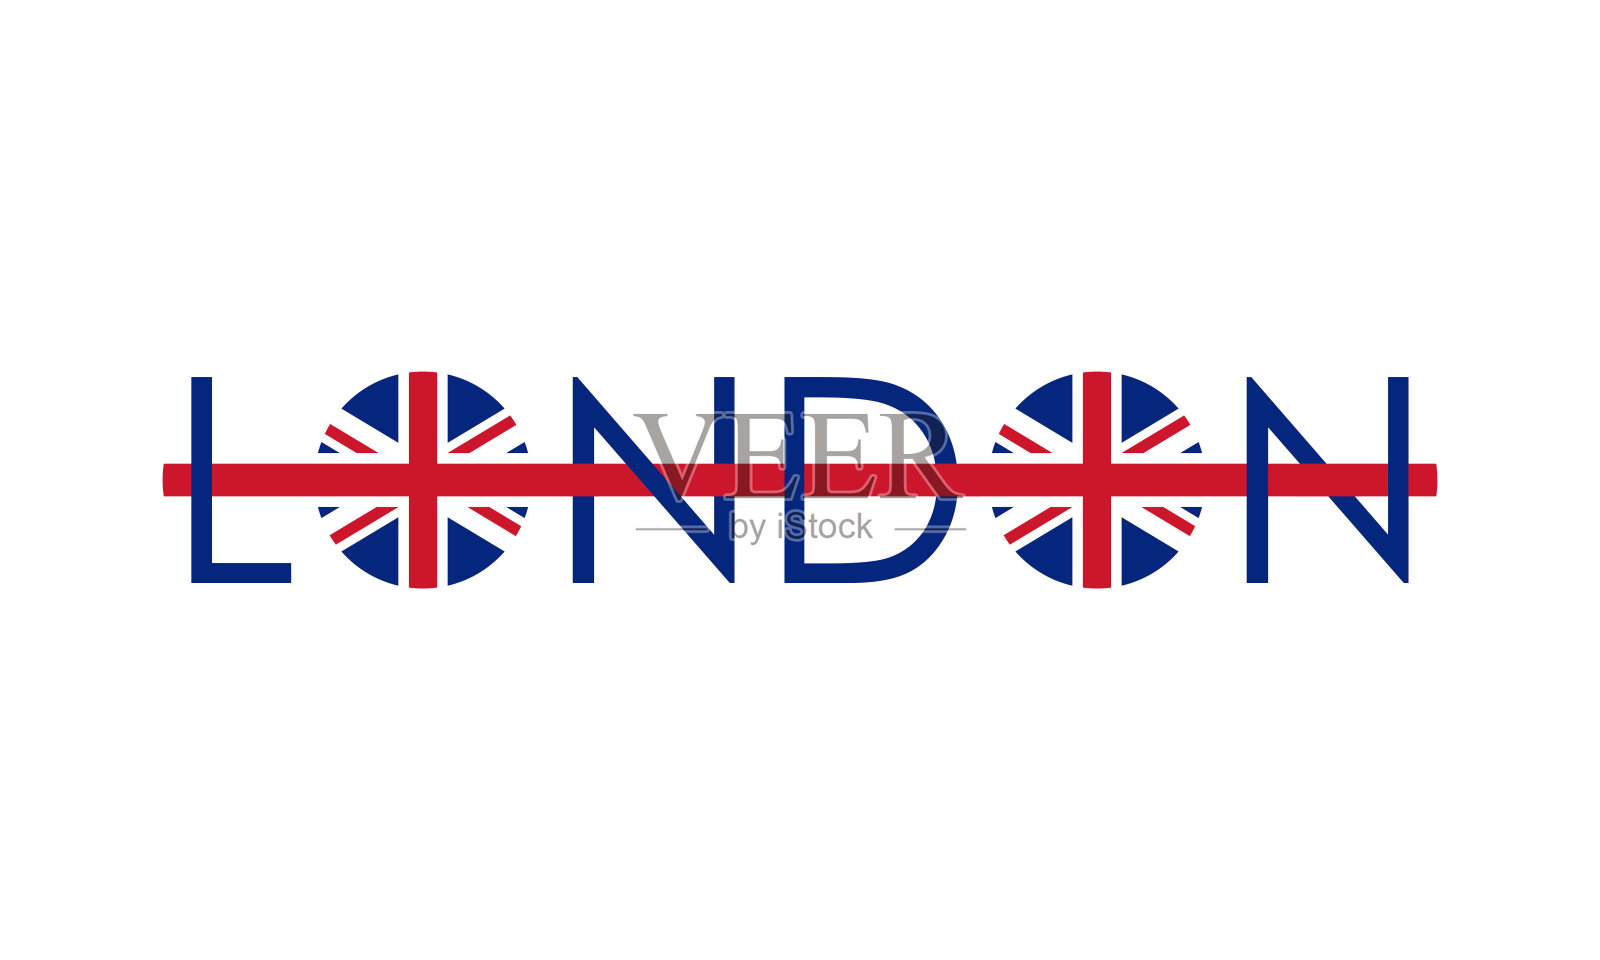 英国国旗图片素材免费下载 - 觅知网